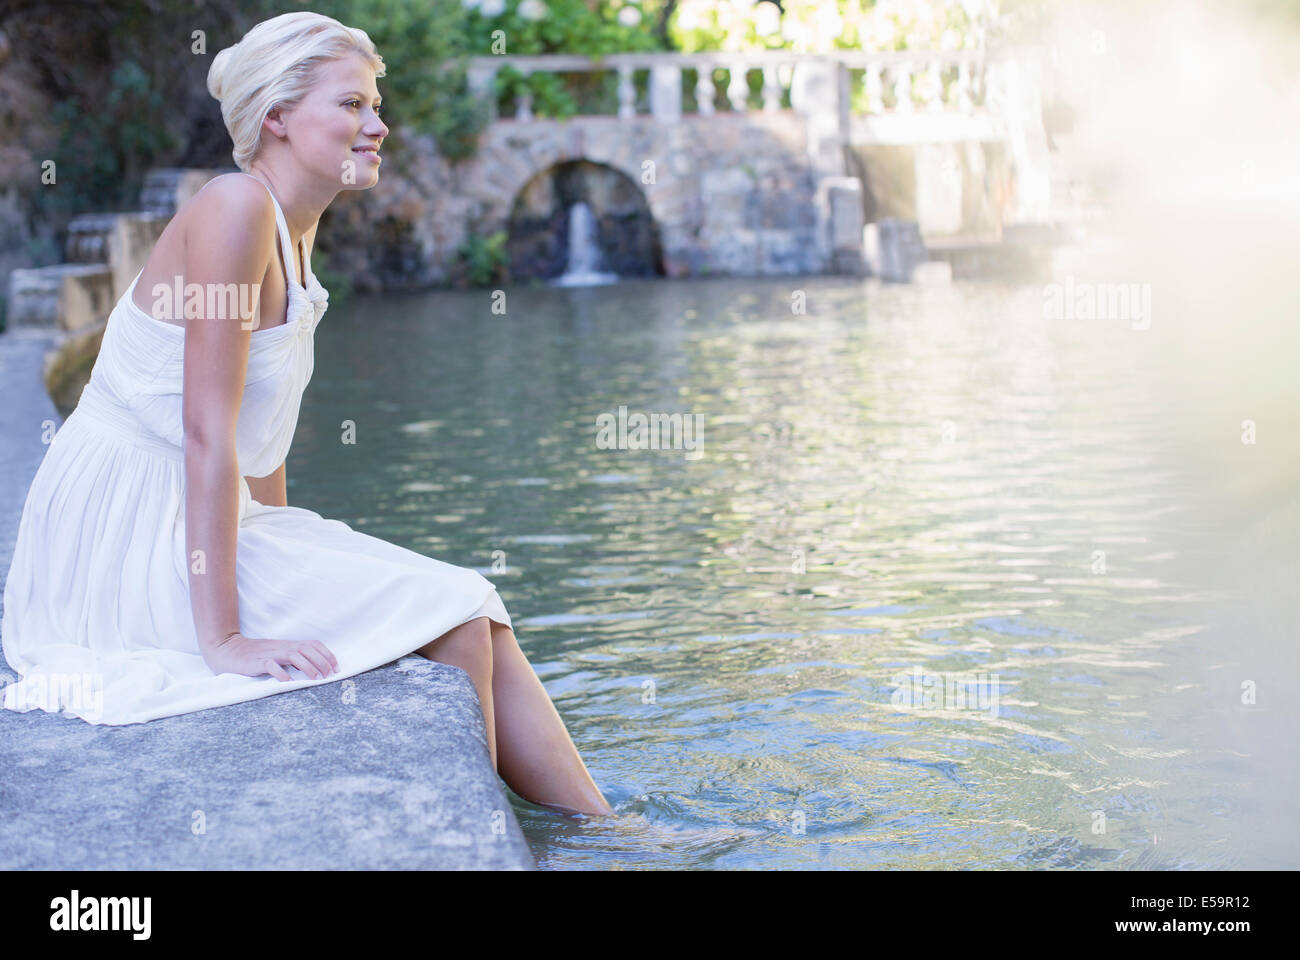 Woman dangling pieds dans la piscine Banque D'Images